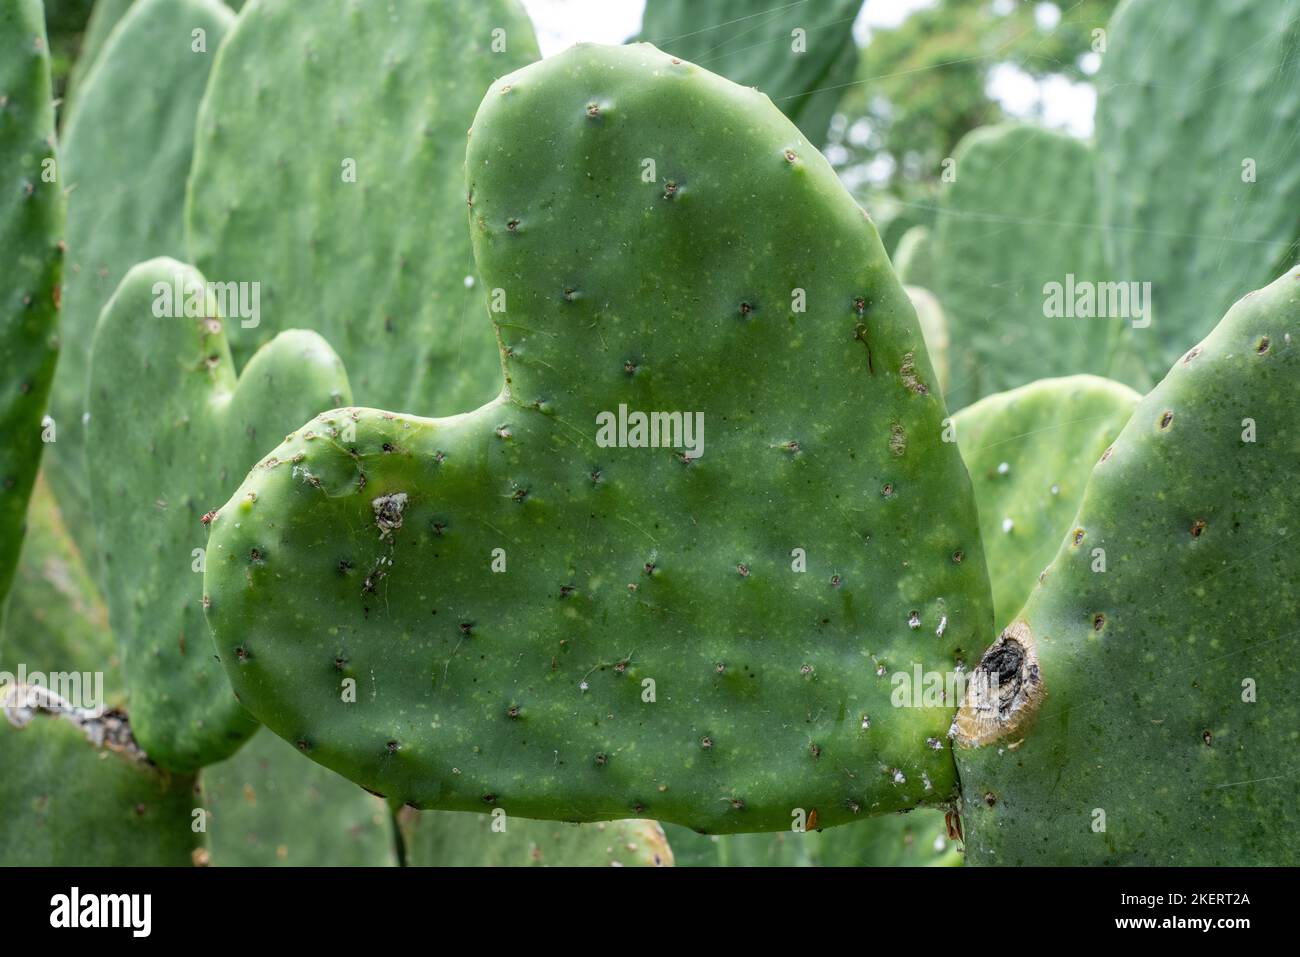 Un bloc de cactus nopal en forme de cœur. Utilisé pour la culture d'insectes cochenille pour la fabrication de colorants cochenille naturels pour les textiles. Oaxaca, Mexique. Banque D'Images